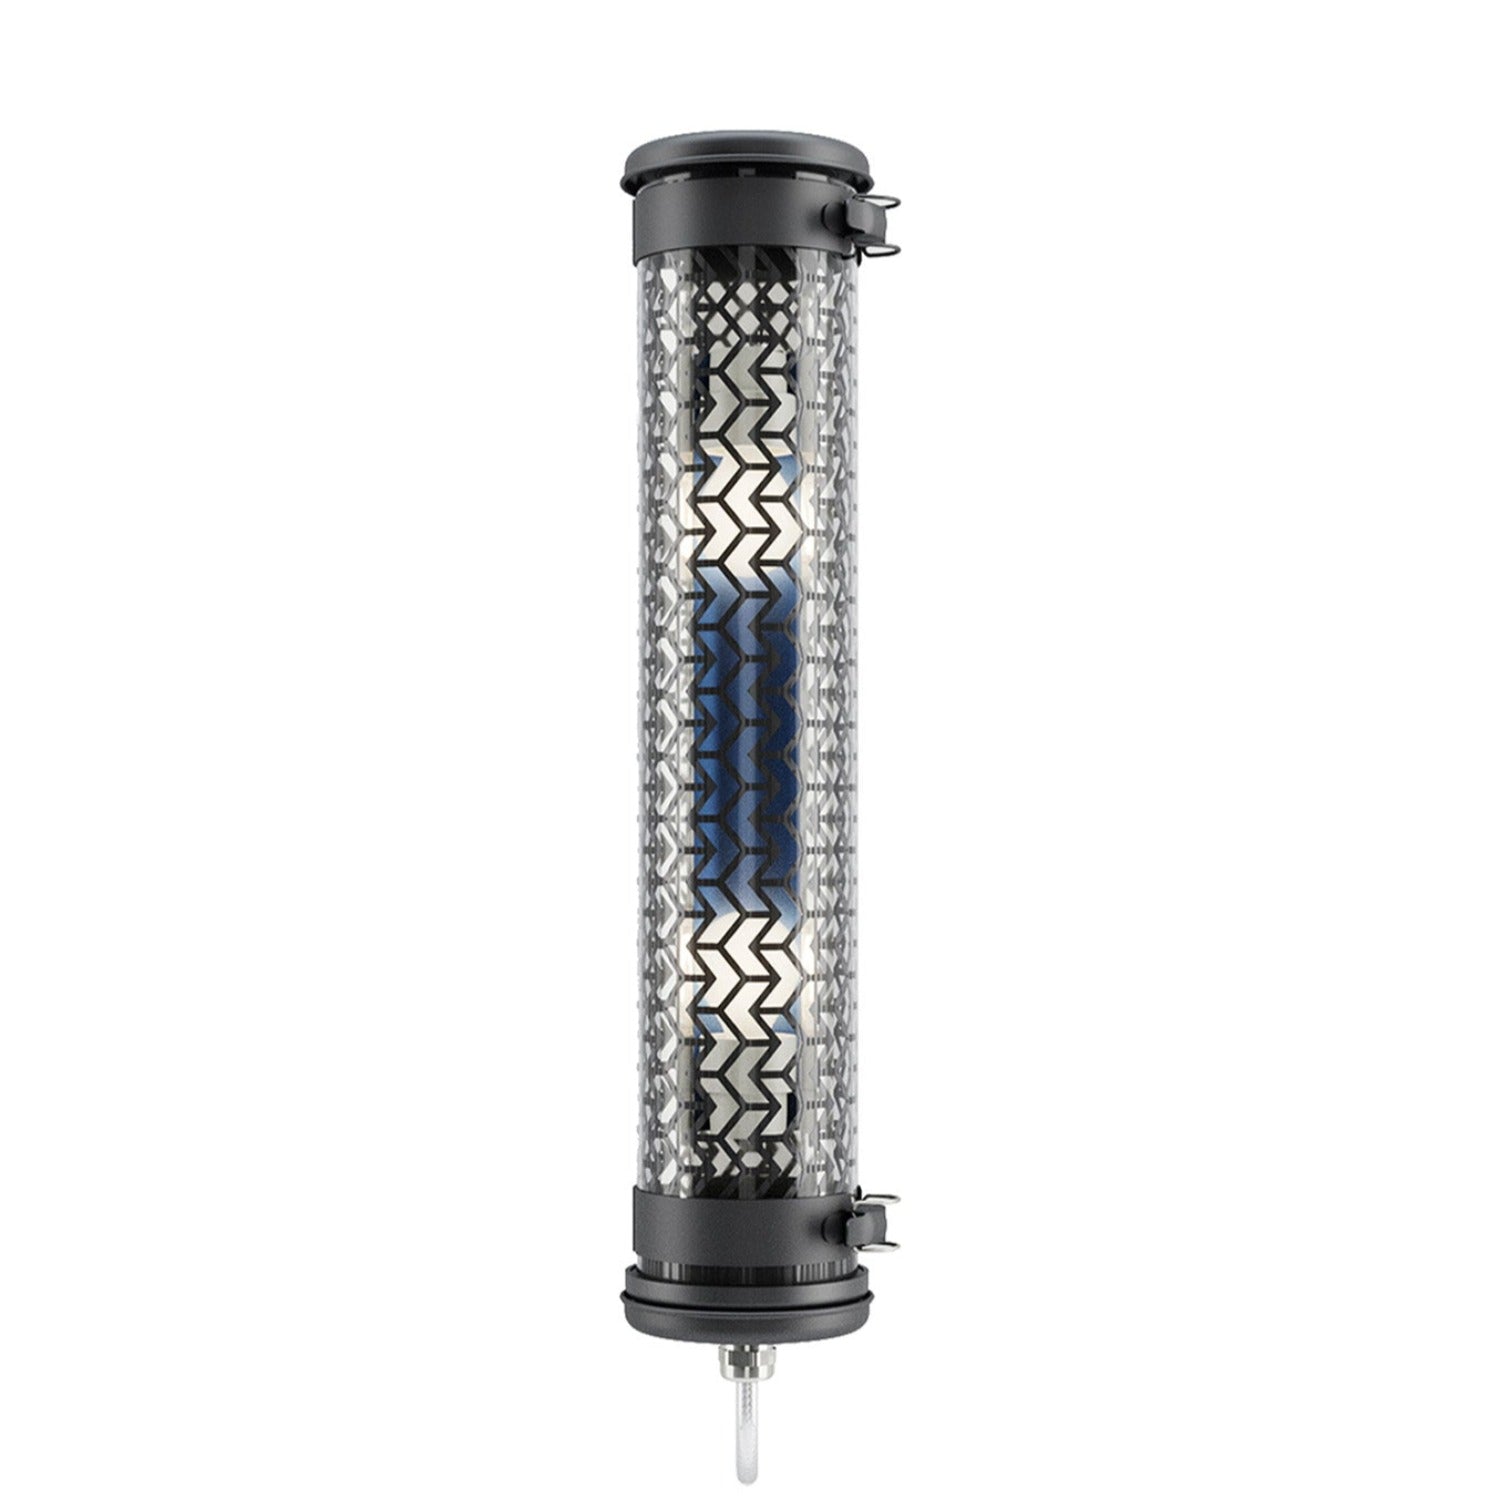 MONCEAU MINI - Black steel waterproof designer tube wall light